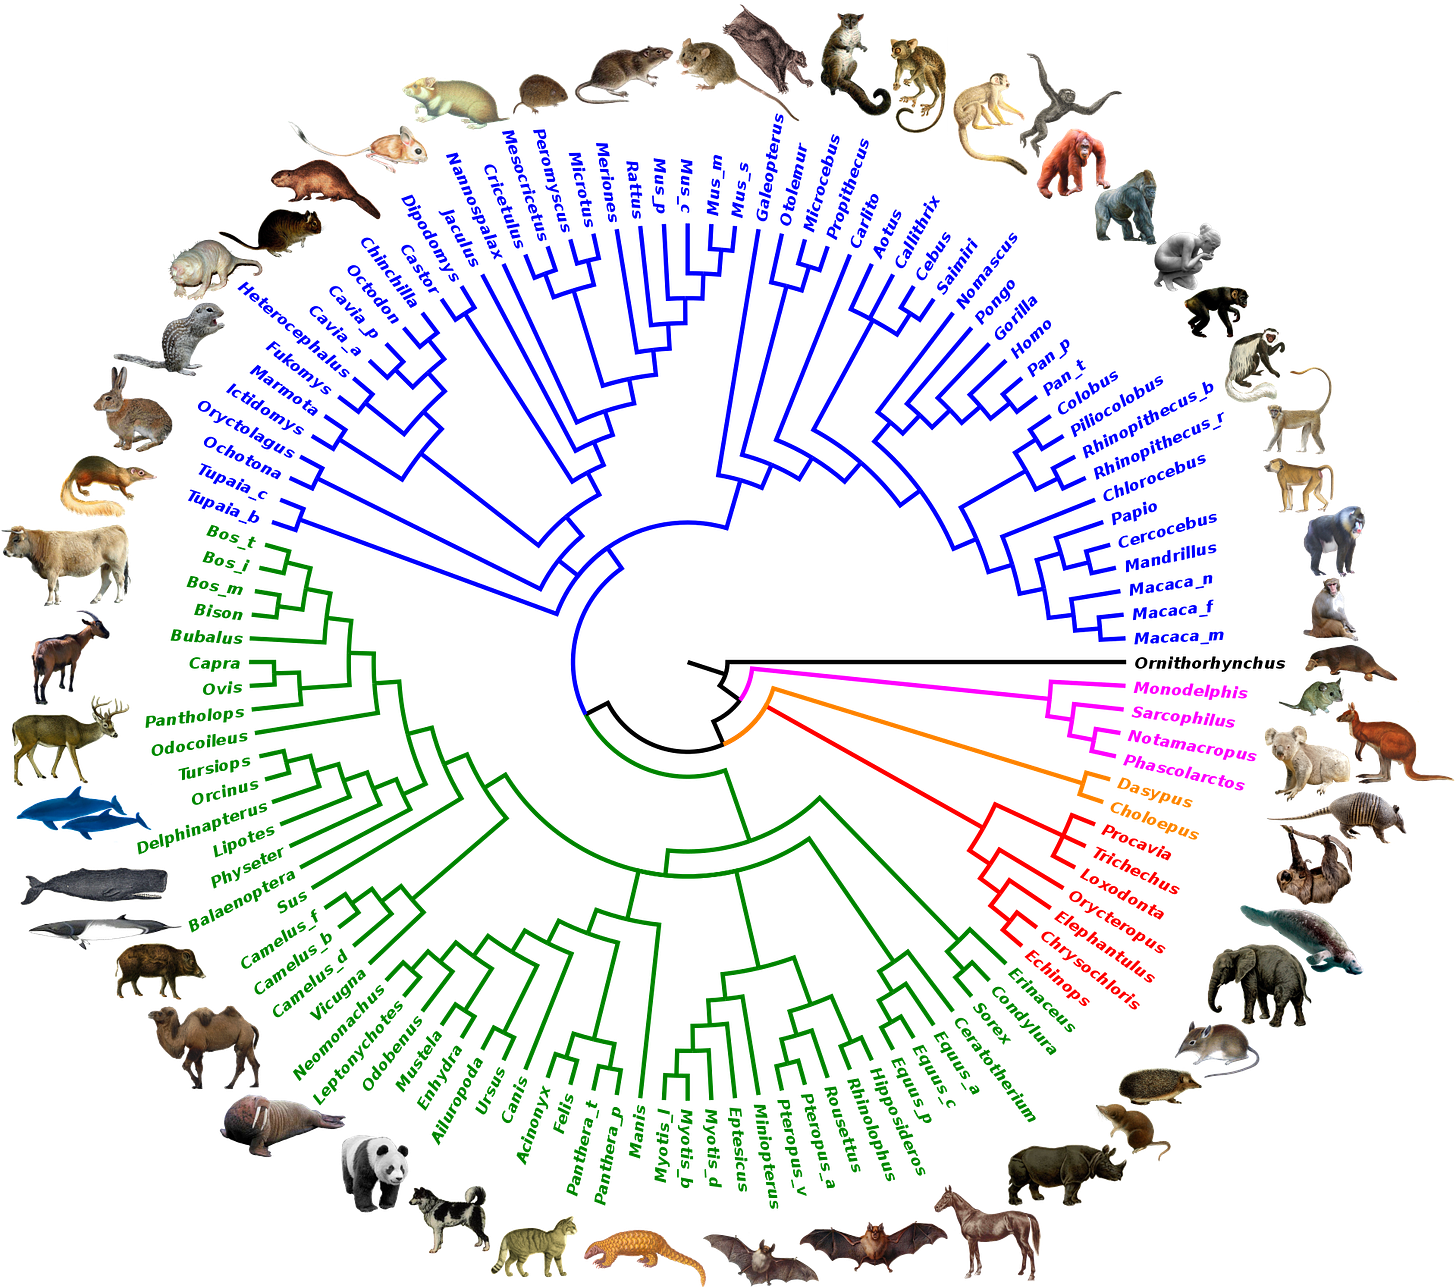 Mammals chart from https://en.wikipedia.org/wiki/Mammal